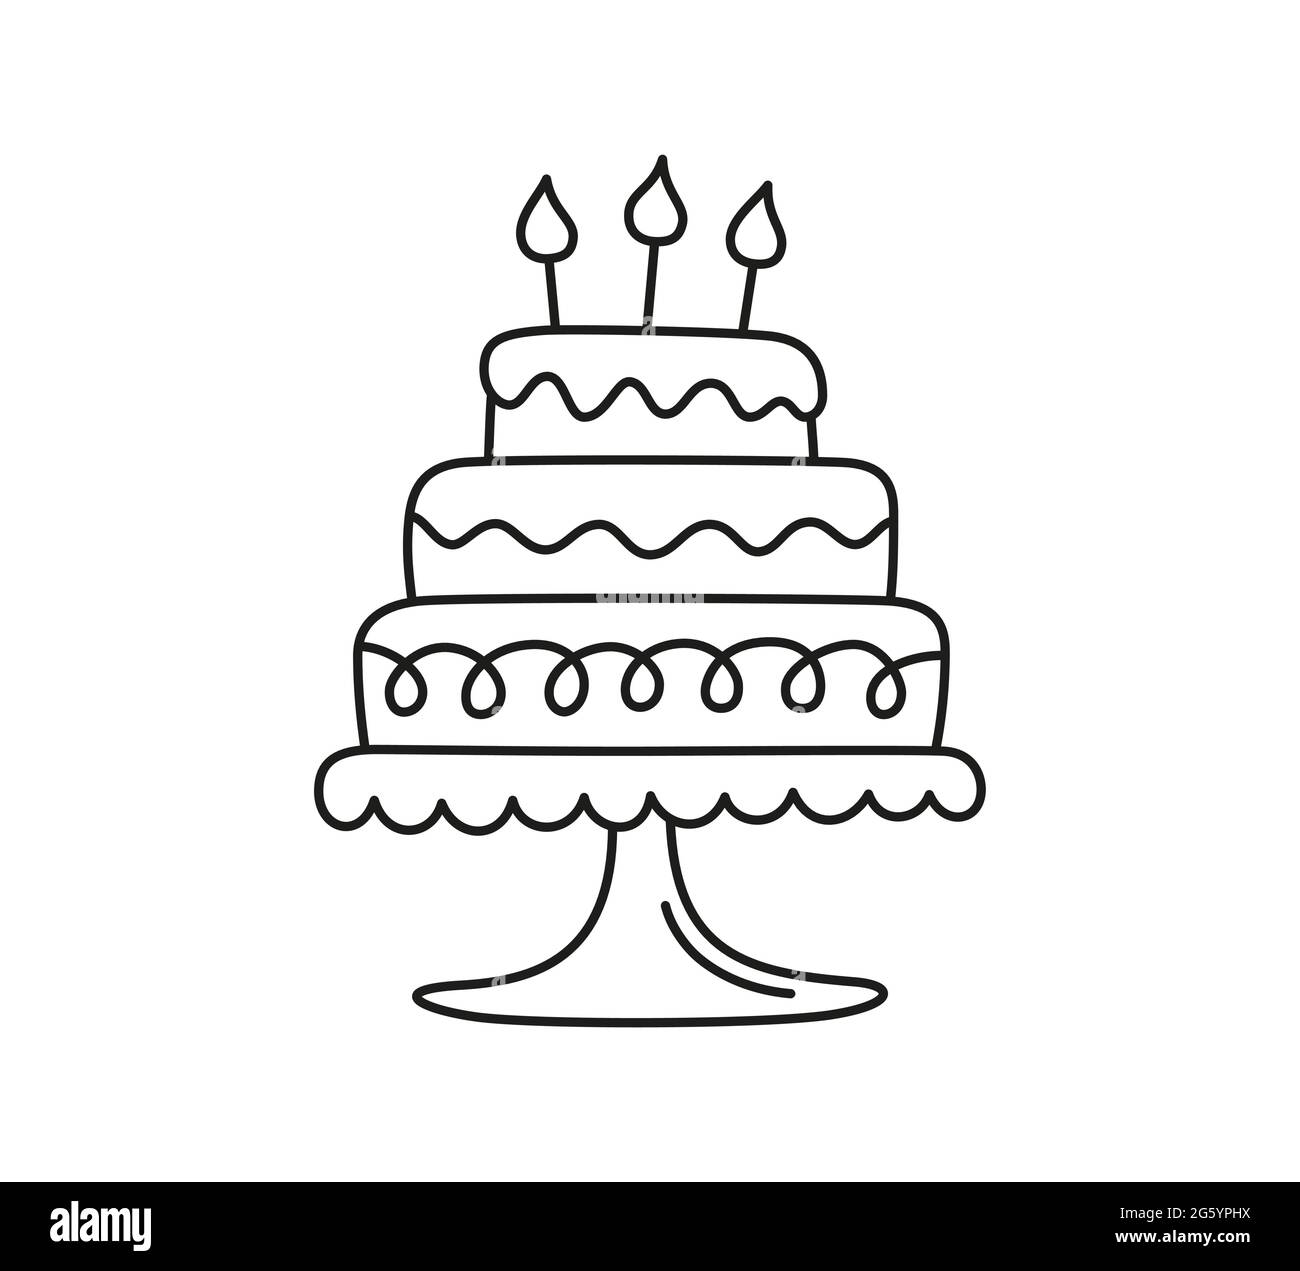 Torta di compleanno disegnata a mano con candele. I bambini hanno un disegno  noodle. Illustrazione vettoriale isolata su sfondo bianco Immagine e  Vettoriale - Alamy